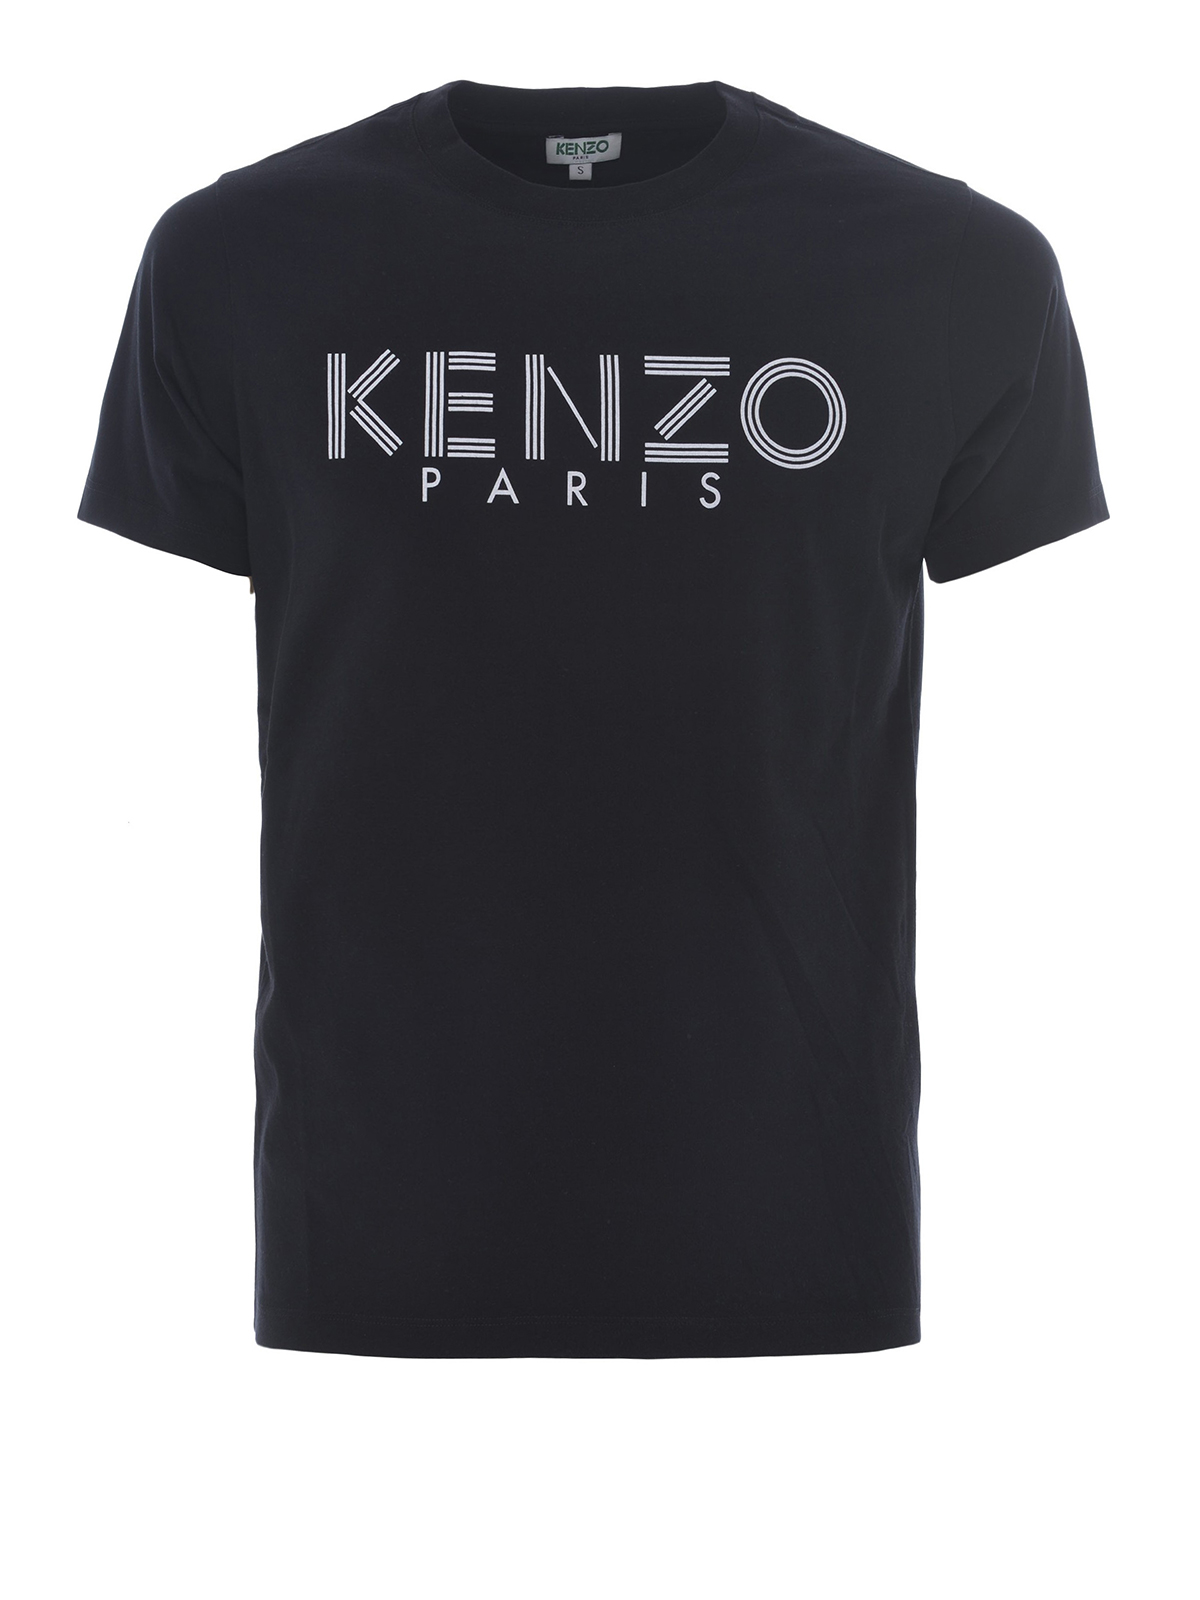 kenzo t shirt black